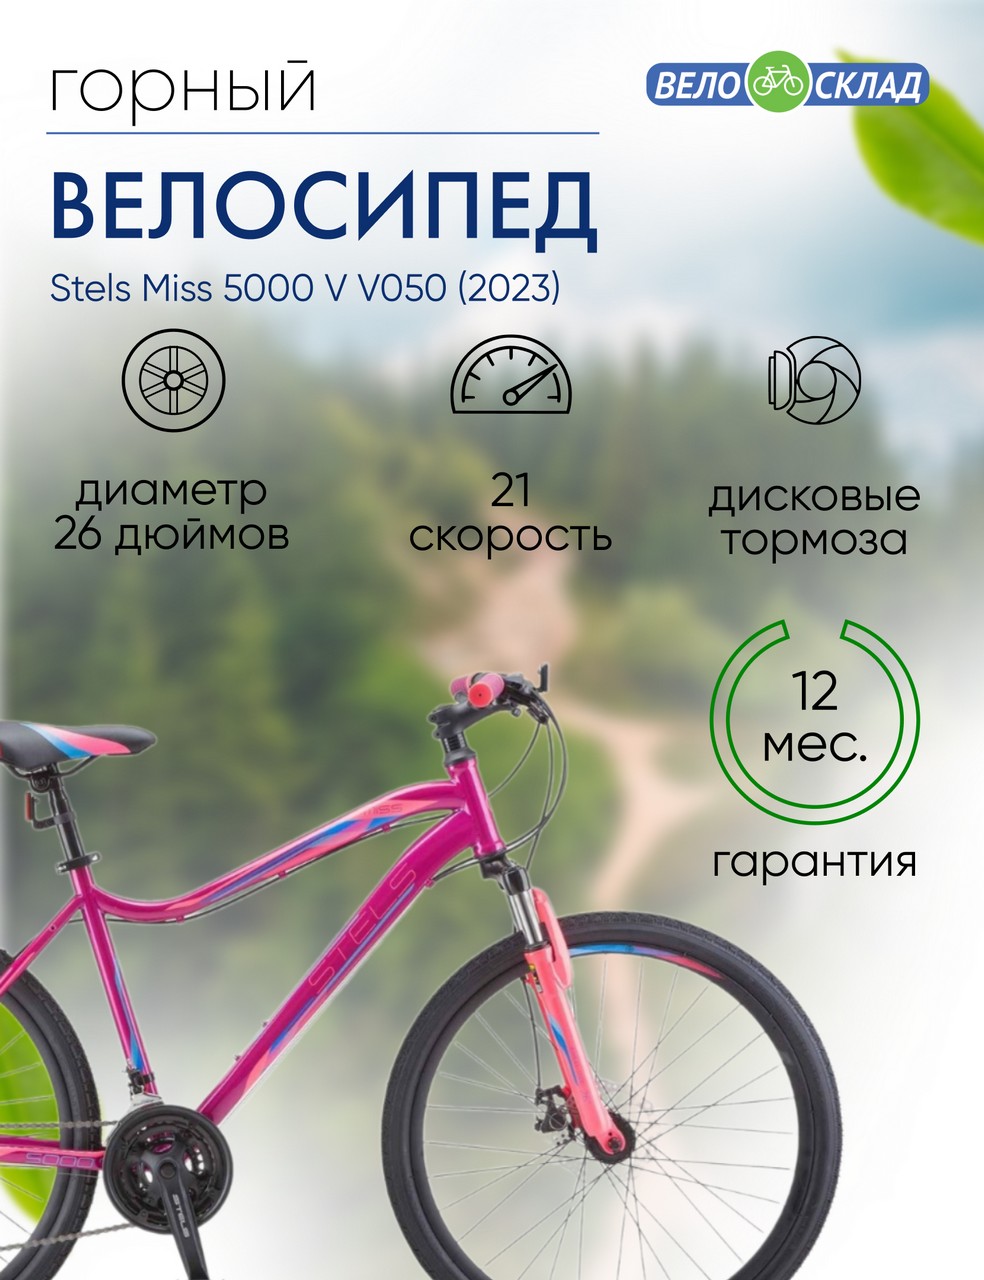 Женский велосипед Stels Miss 5000 V V050, год 2023, цвет Фиолетовый-Розовый, ростовка 18